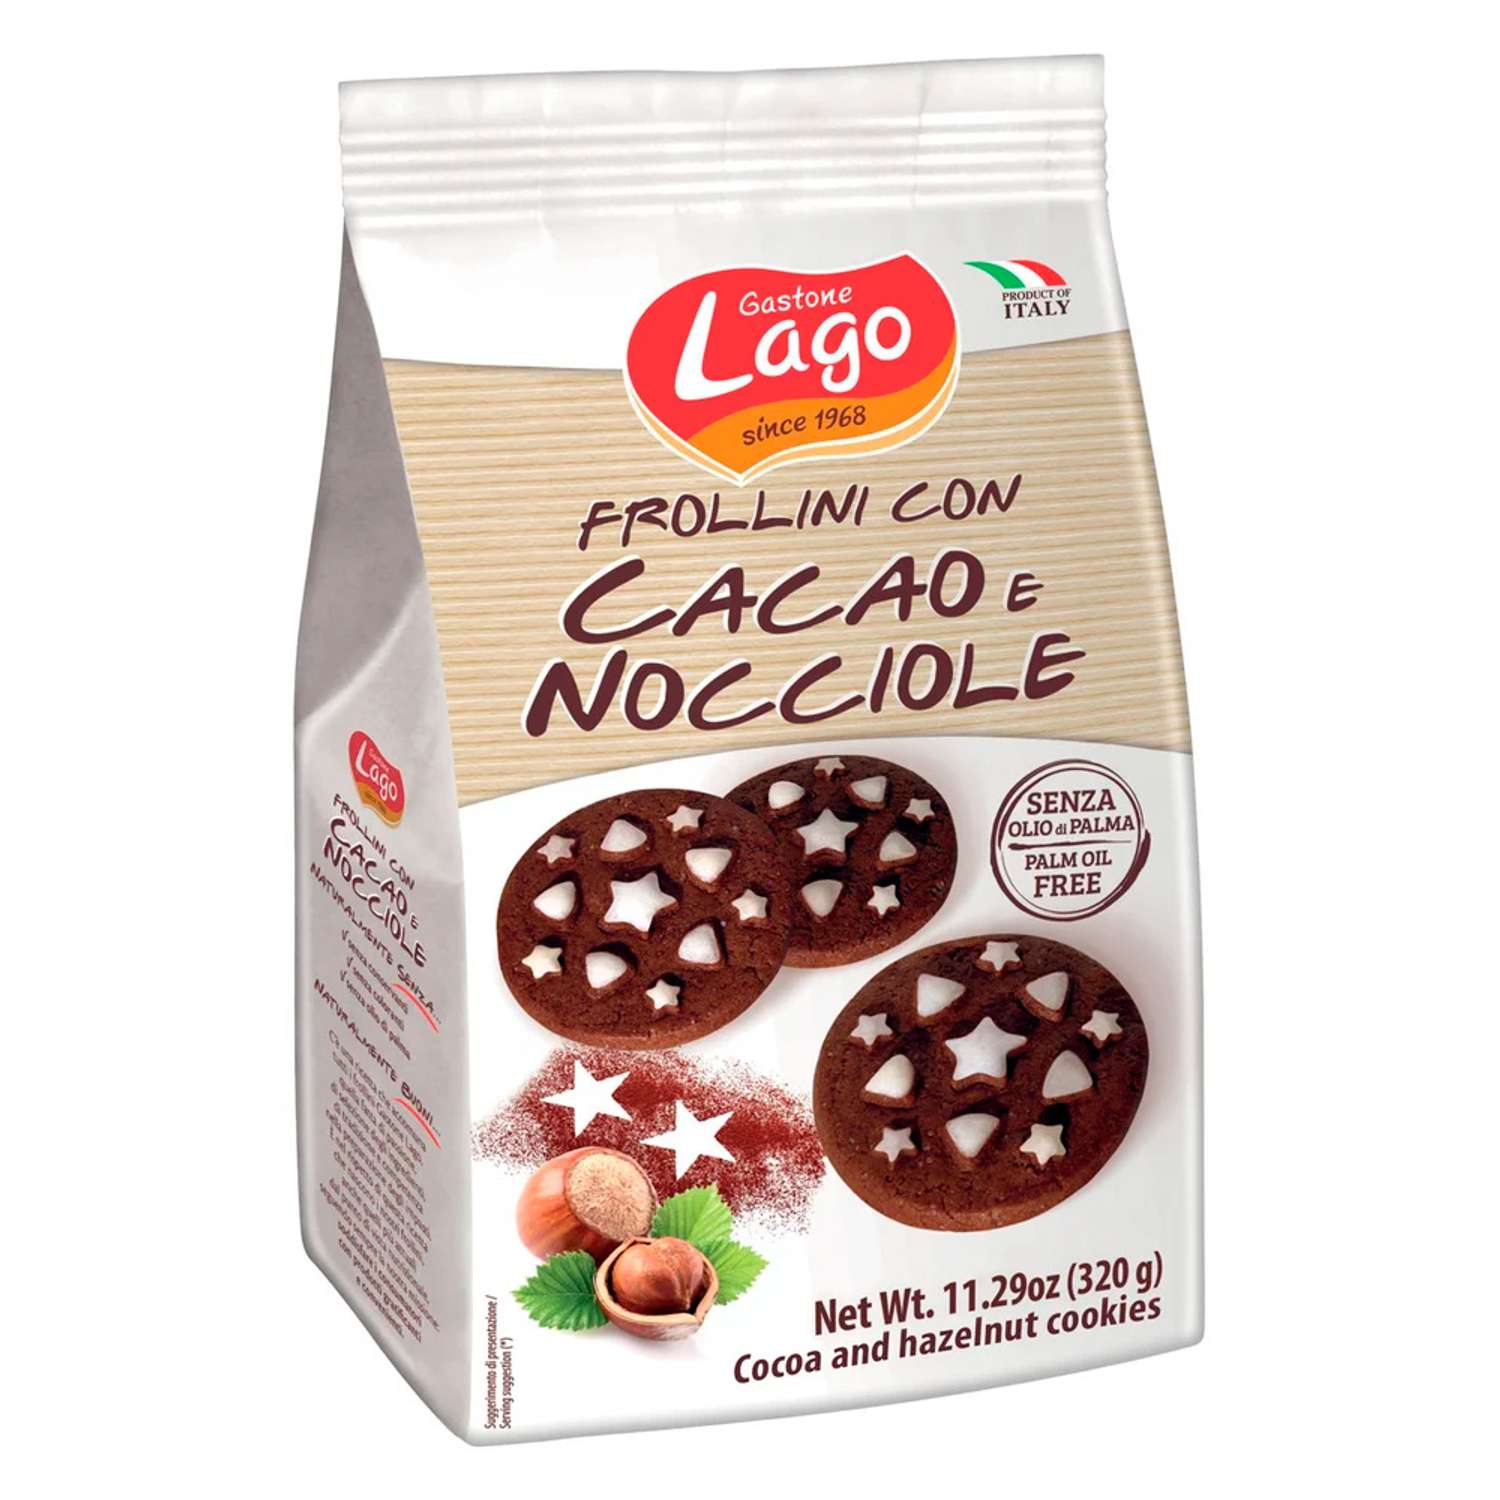 Печенье Frollini Gastone Lago с шоколадом и фундуком 320 г - фото 1